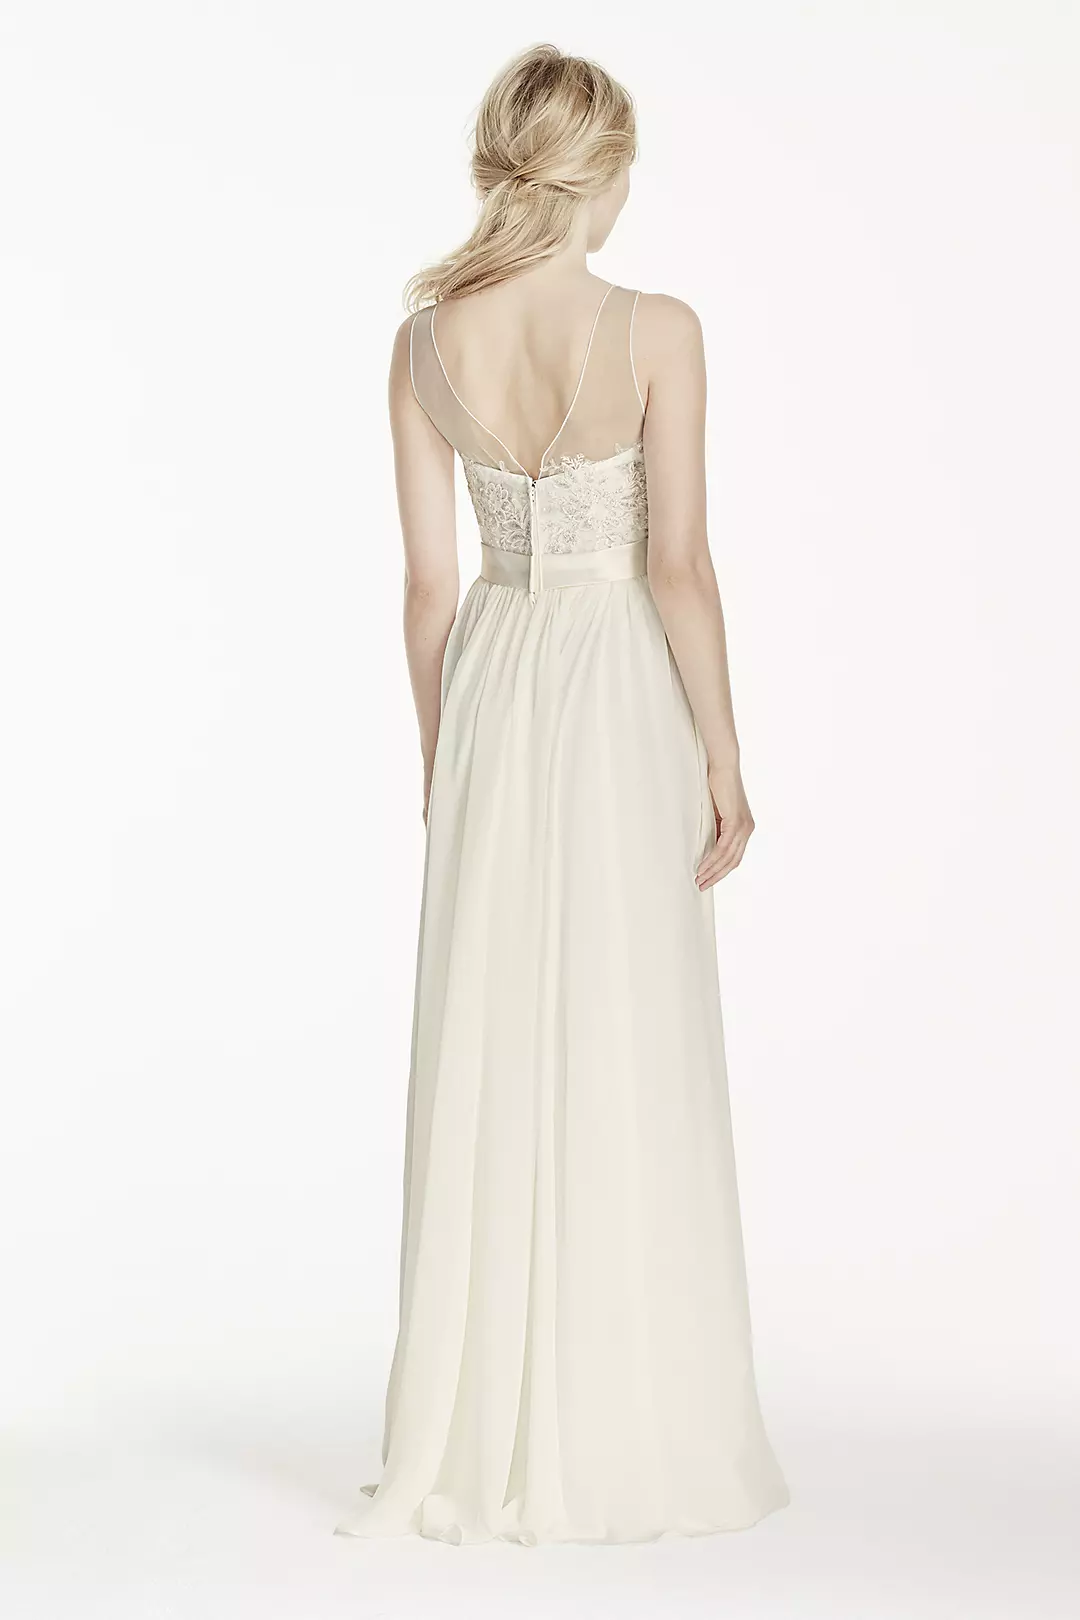 Illusion Lace Tank Chiffon Wedding Dress with Sash Image 2